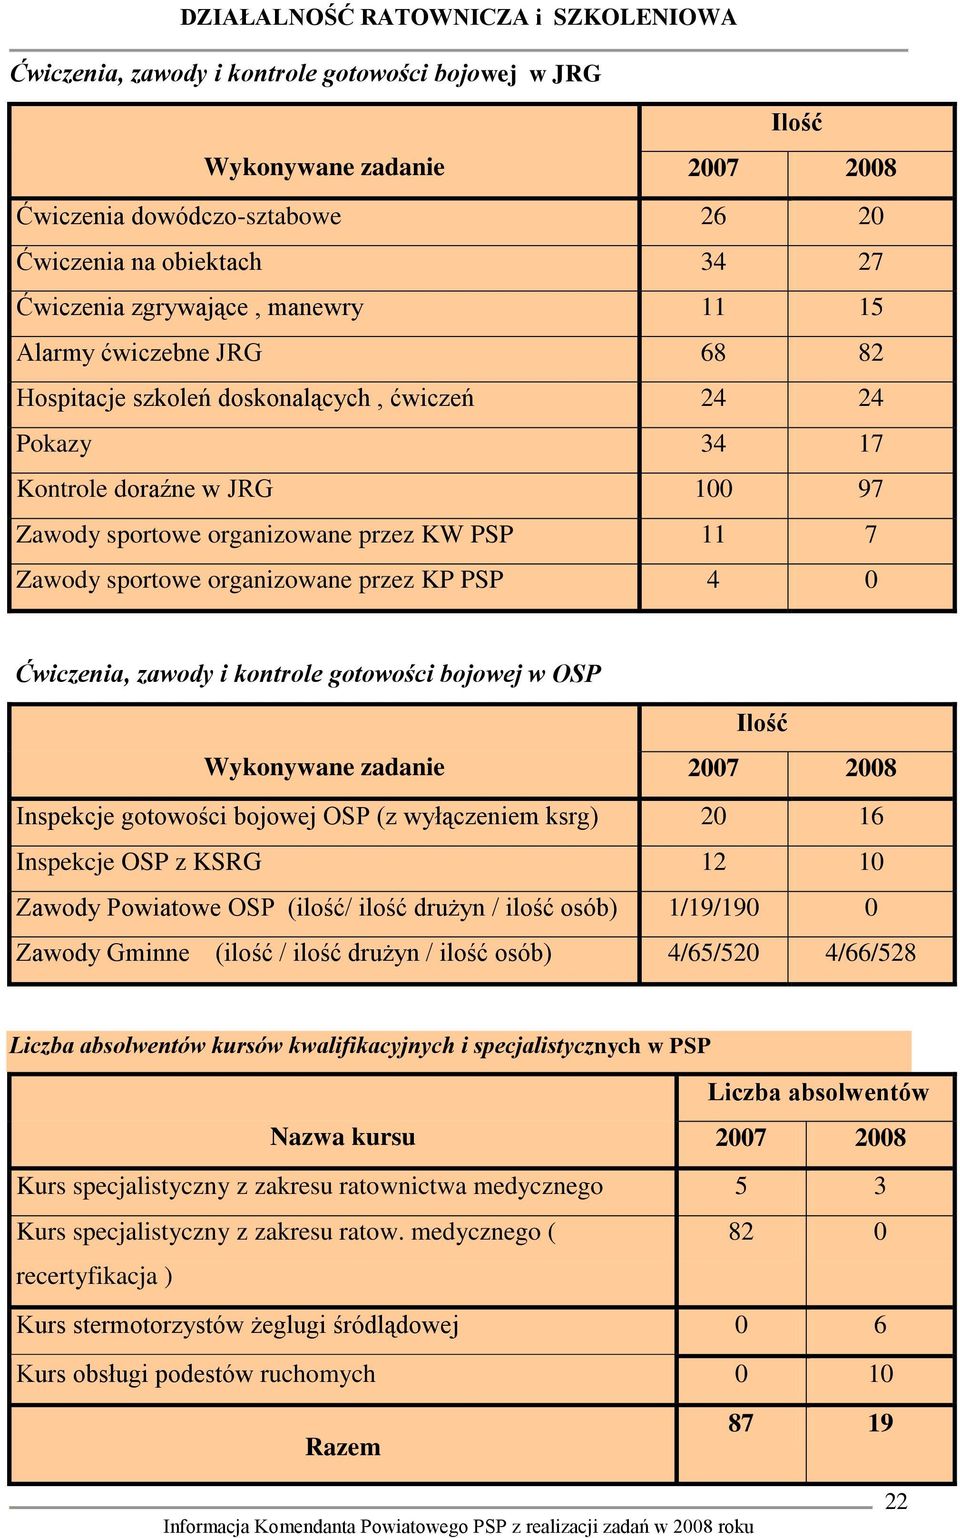 4 0 Ćwiczenia, zawody i kontrole gotowości bojowej w OSP Wykonywane zadanie Ilość 2007 2008 Inspekcje gotowości bojowej OSP (z wyłączeniem ksrg) 20 16 Inspekcje OSP z KSRG 12 10 Zawody Powiatowe OSP